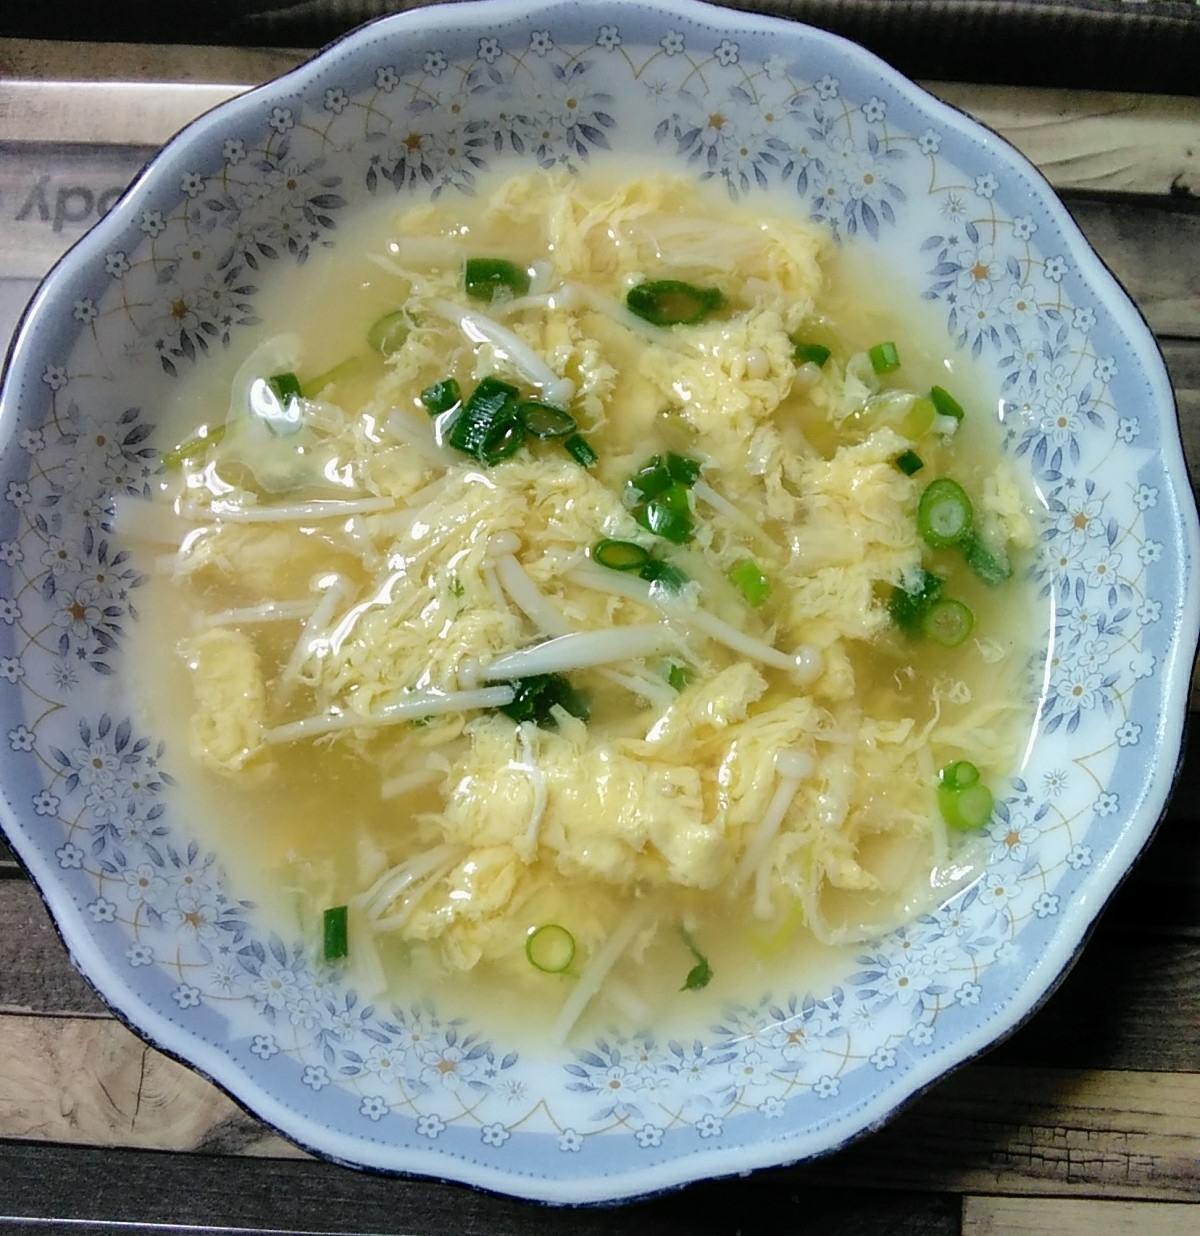 白ねぎとえのきの韓国風卵スープ